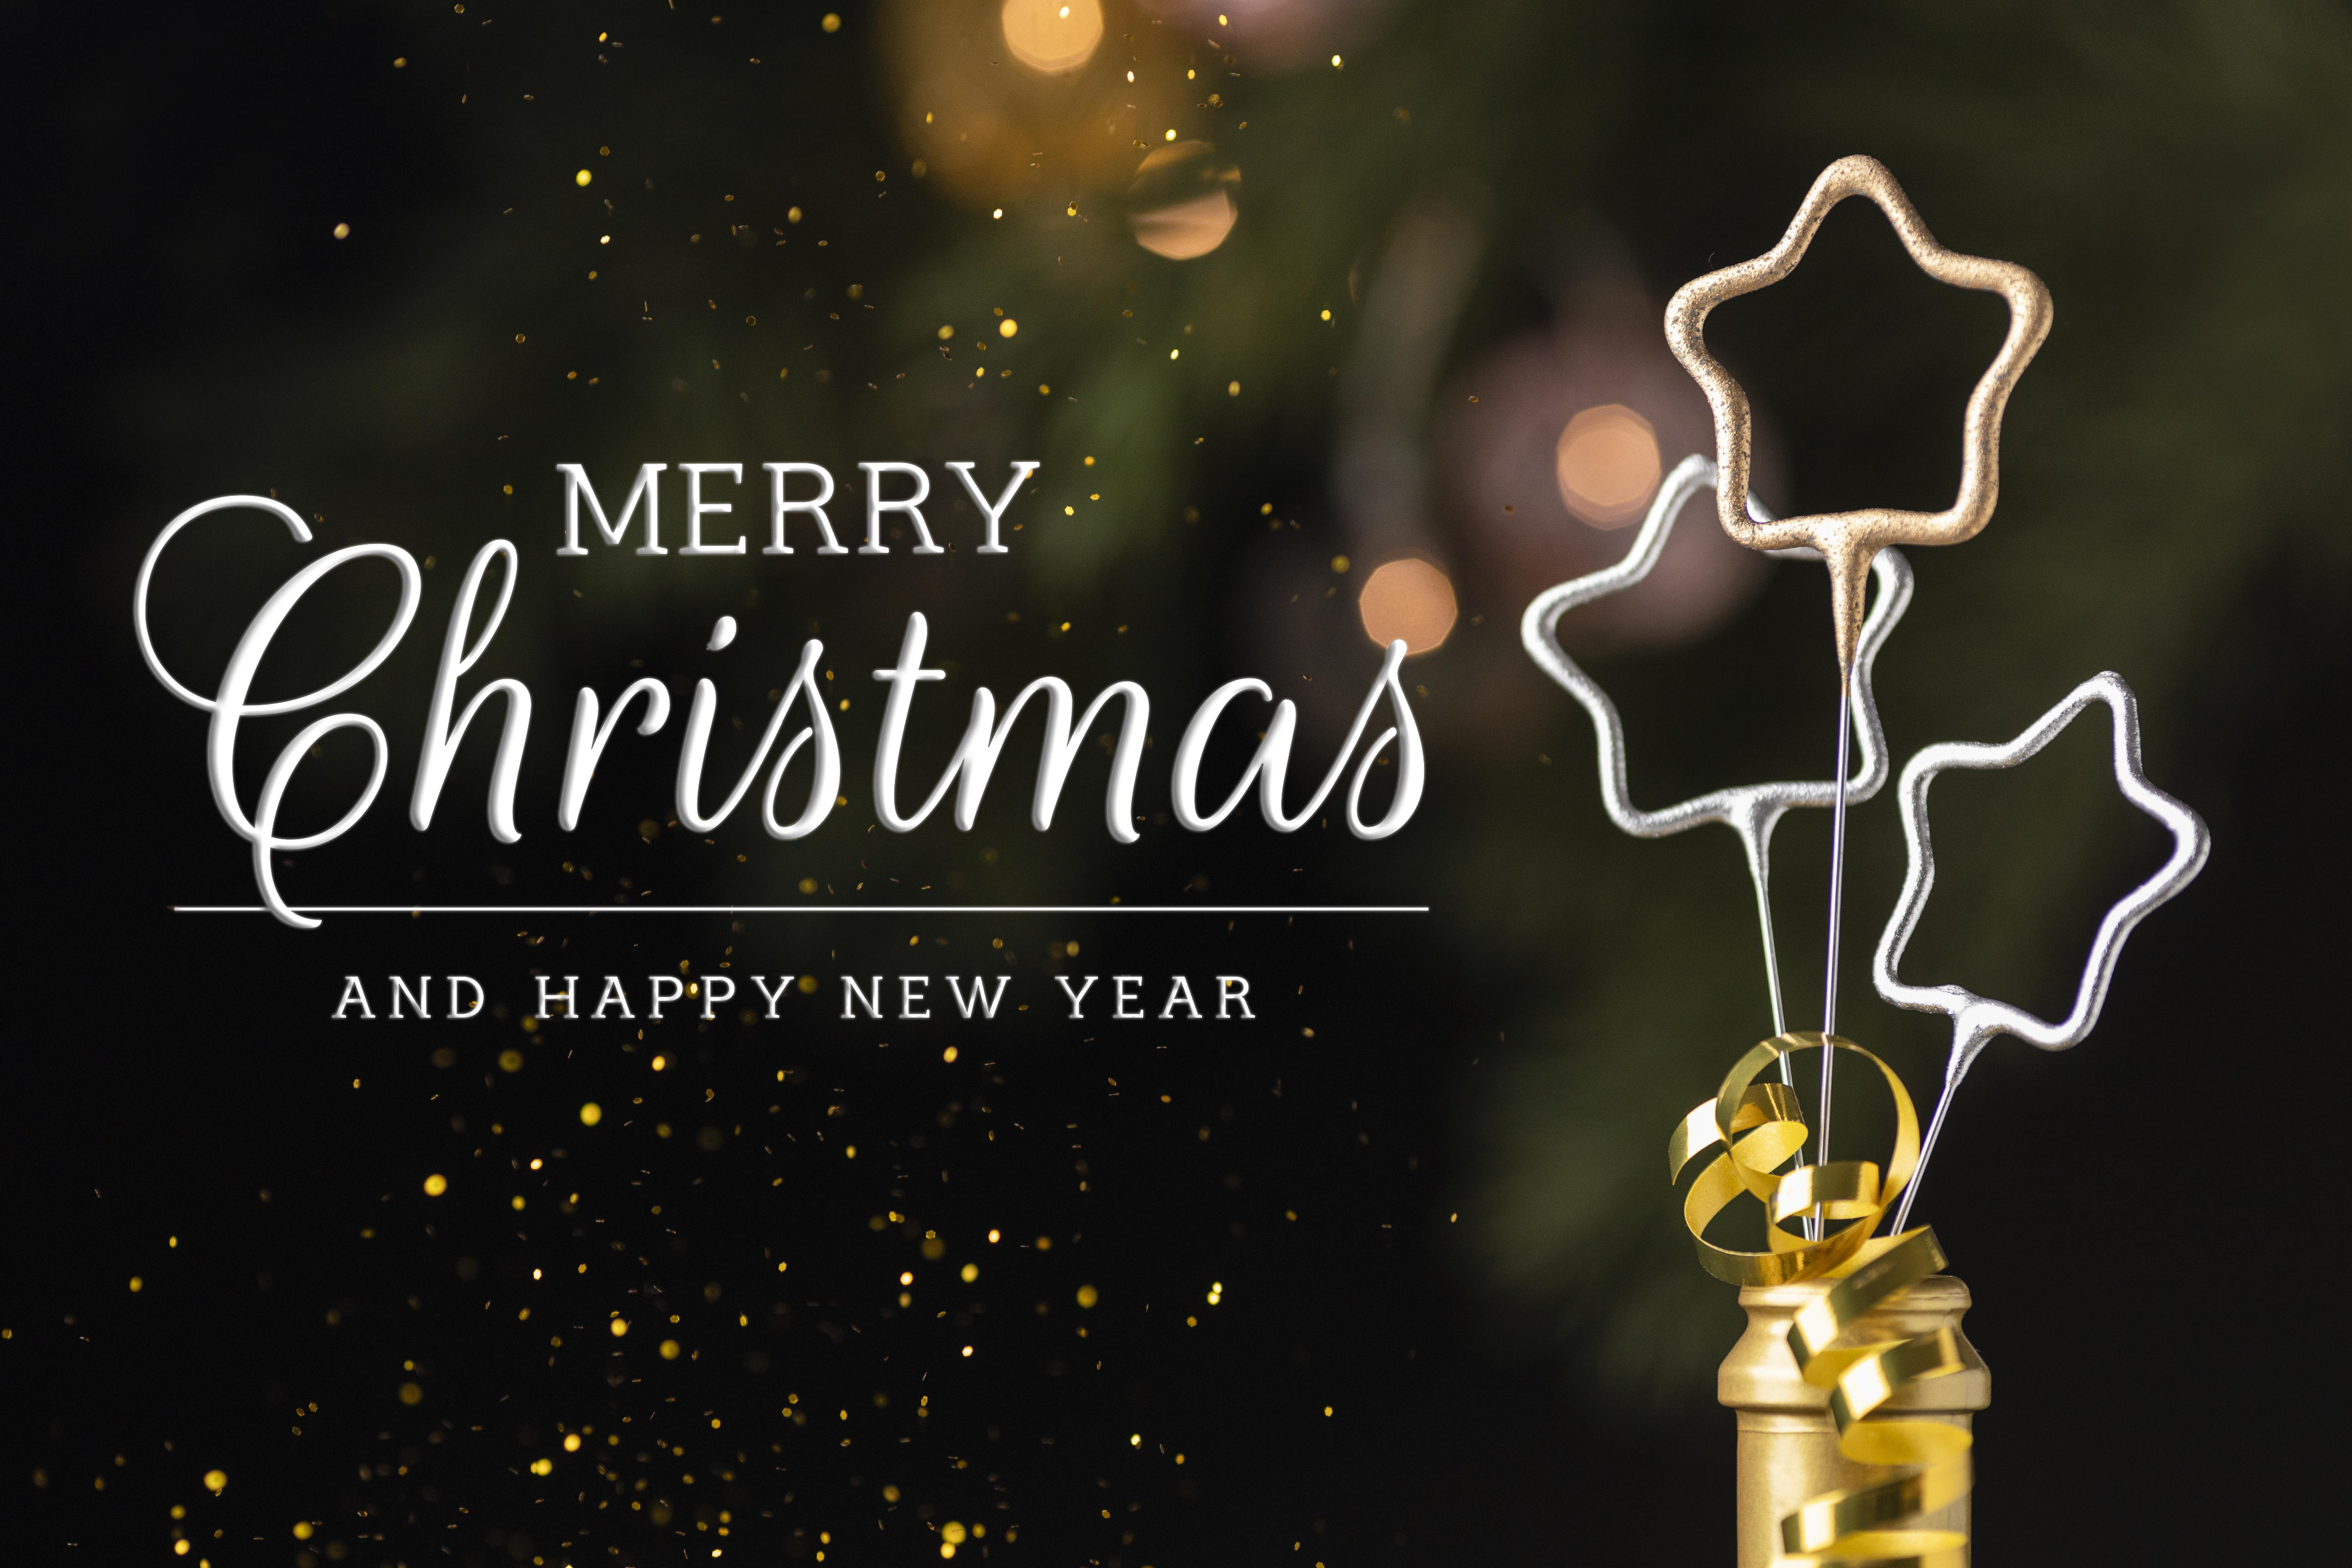 Schriftzug MERRY Christmas AND A HAPPY NEW YEAR neben Stern-Wunderkerzen und Glitzerstaub im Hintergrund